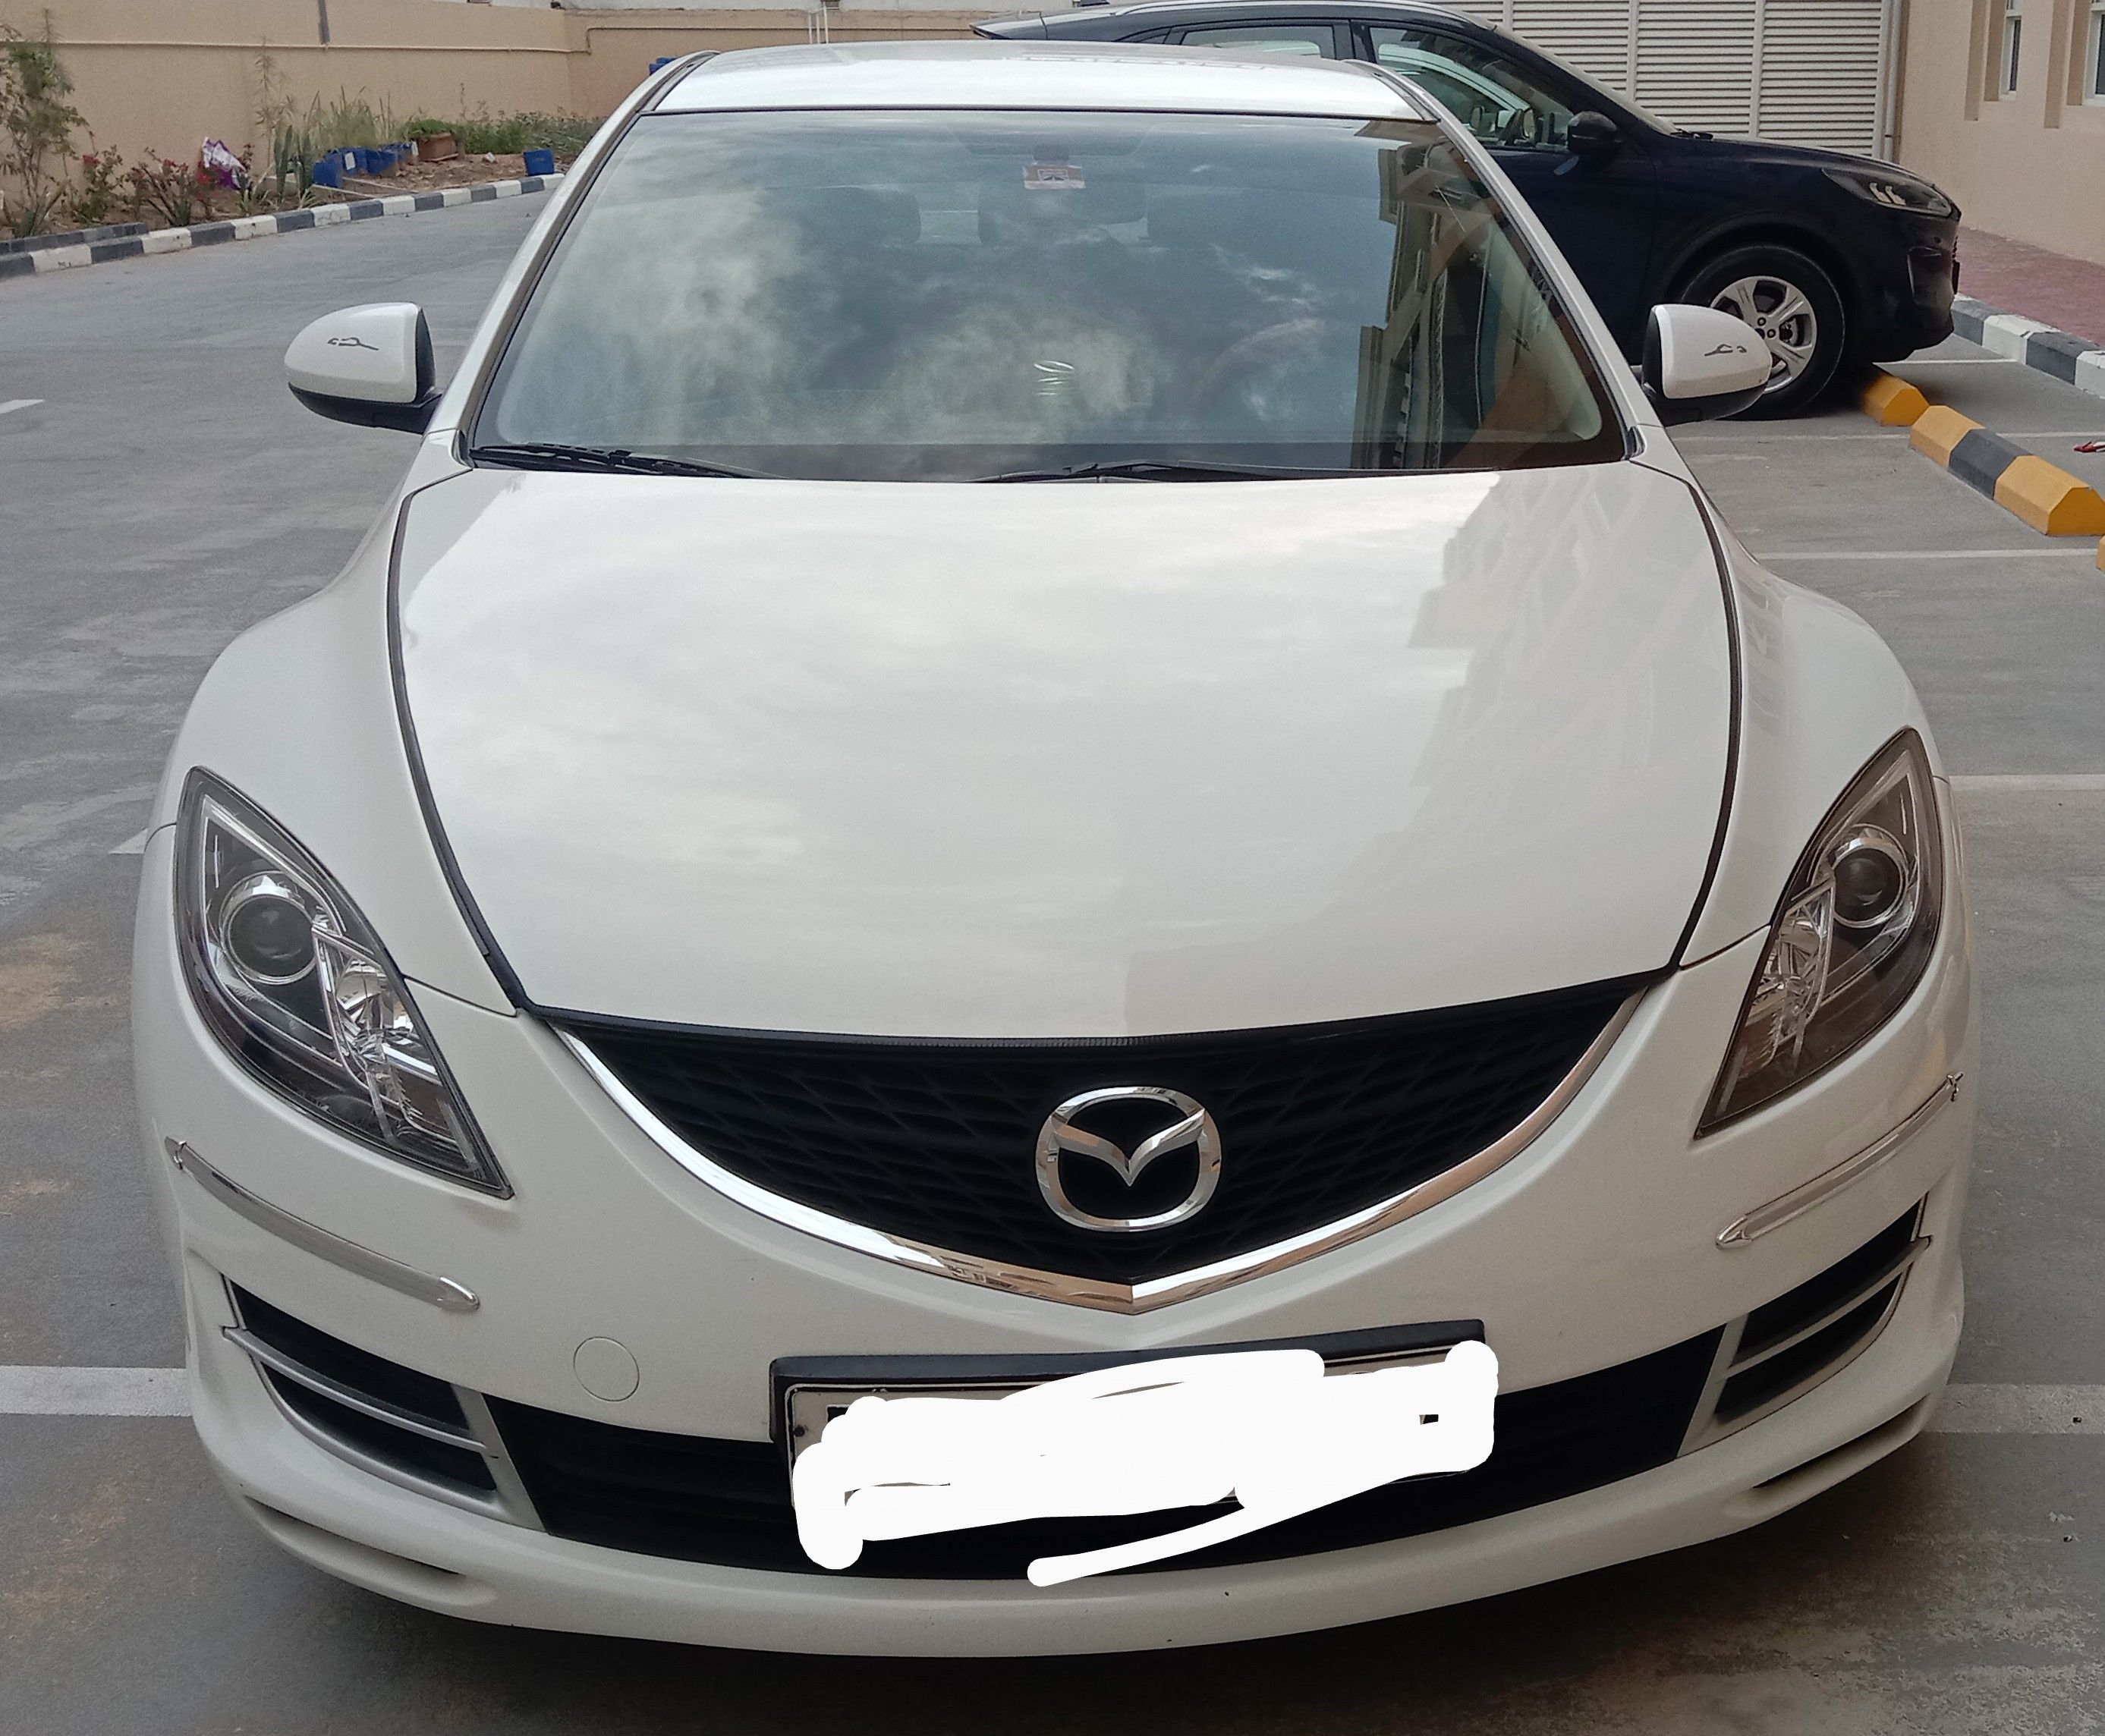 2009 Mazda 6 in dubai